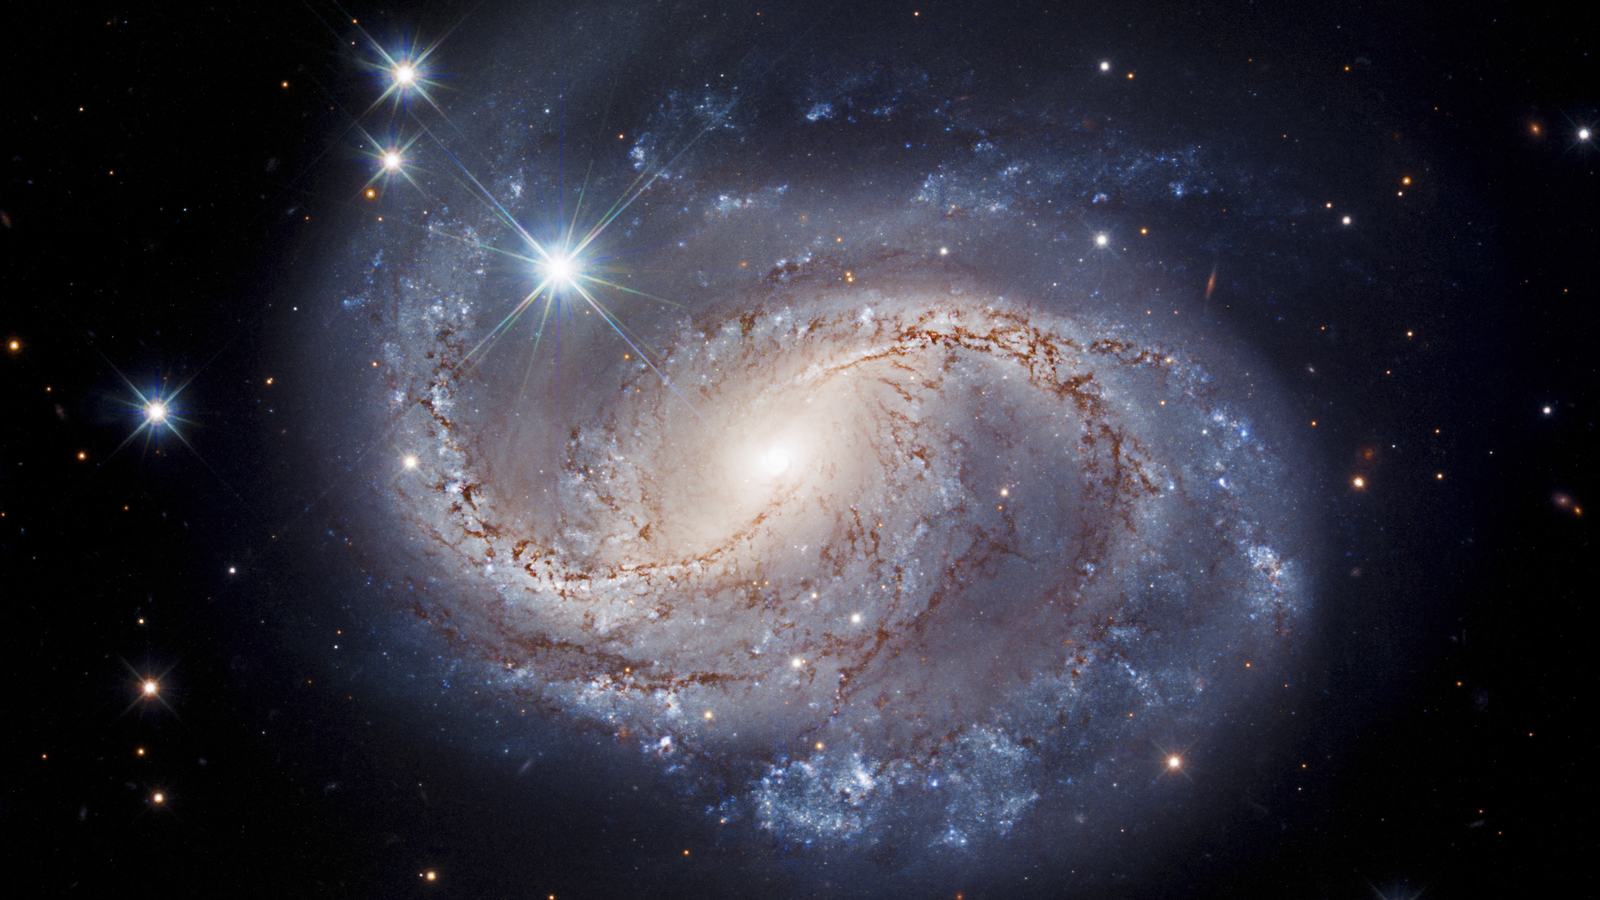 El telescopio espacial Hubble captura una imagen radiante de la galaxia espiral barrada